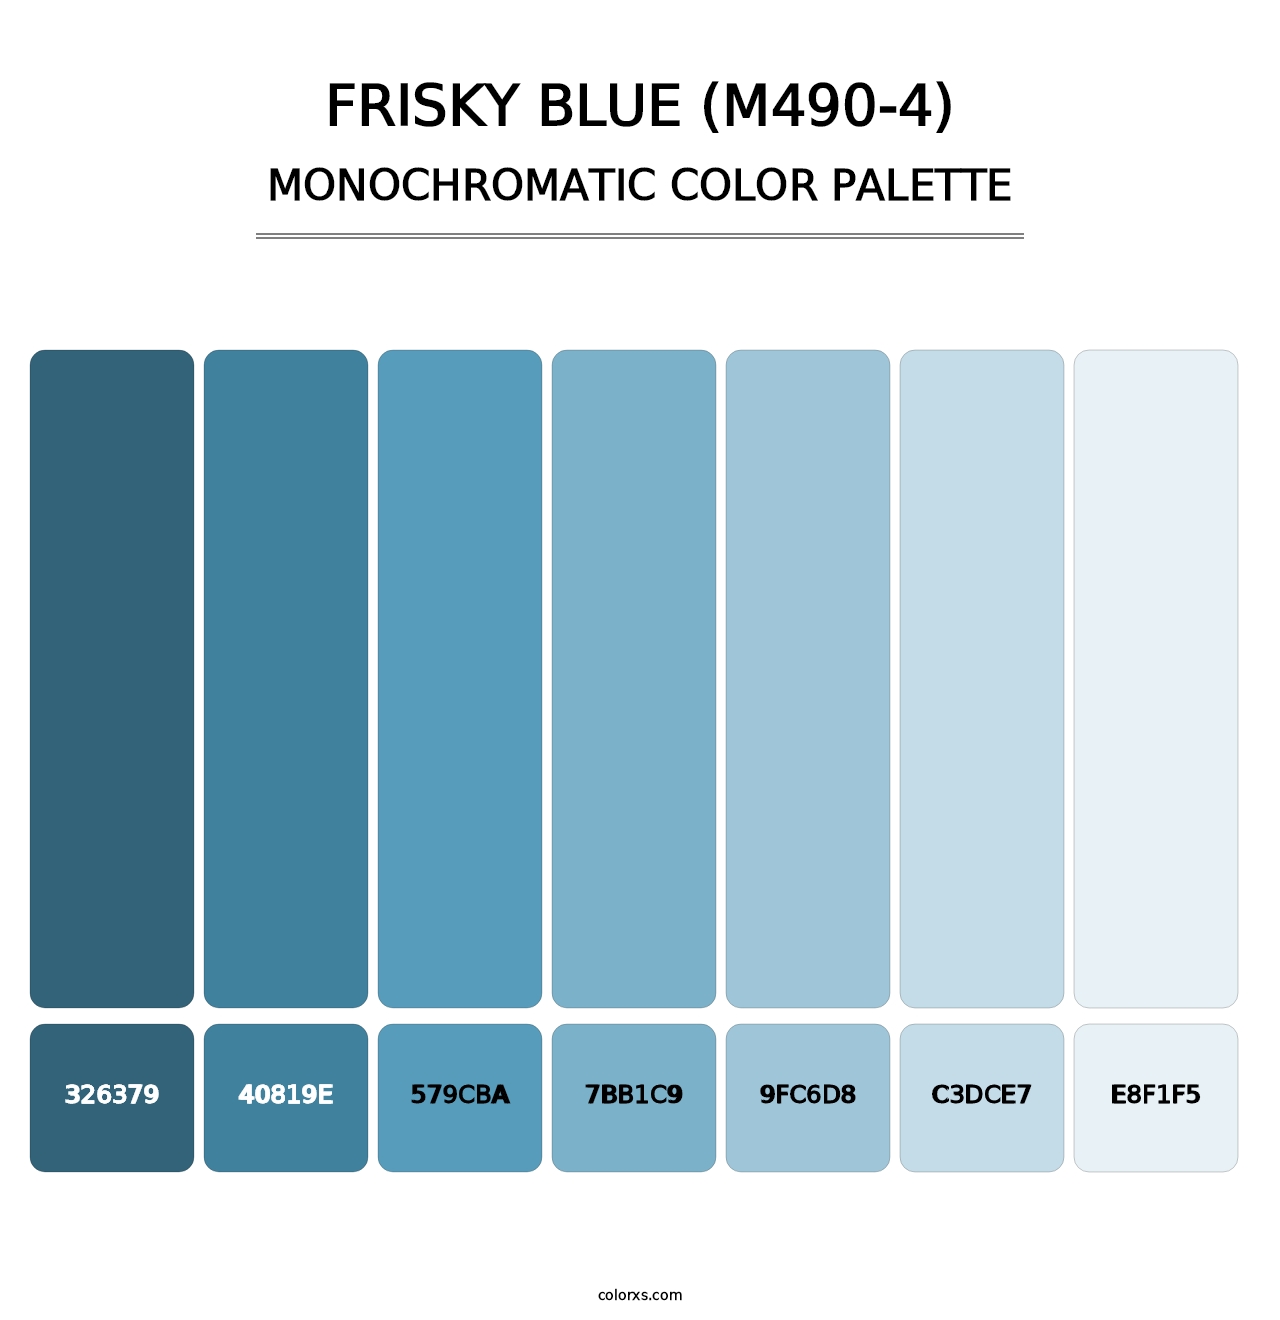 Frisky Blue (M490-4) - Monochromatic Color Palette